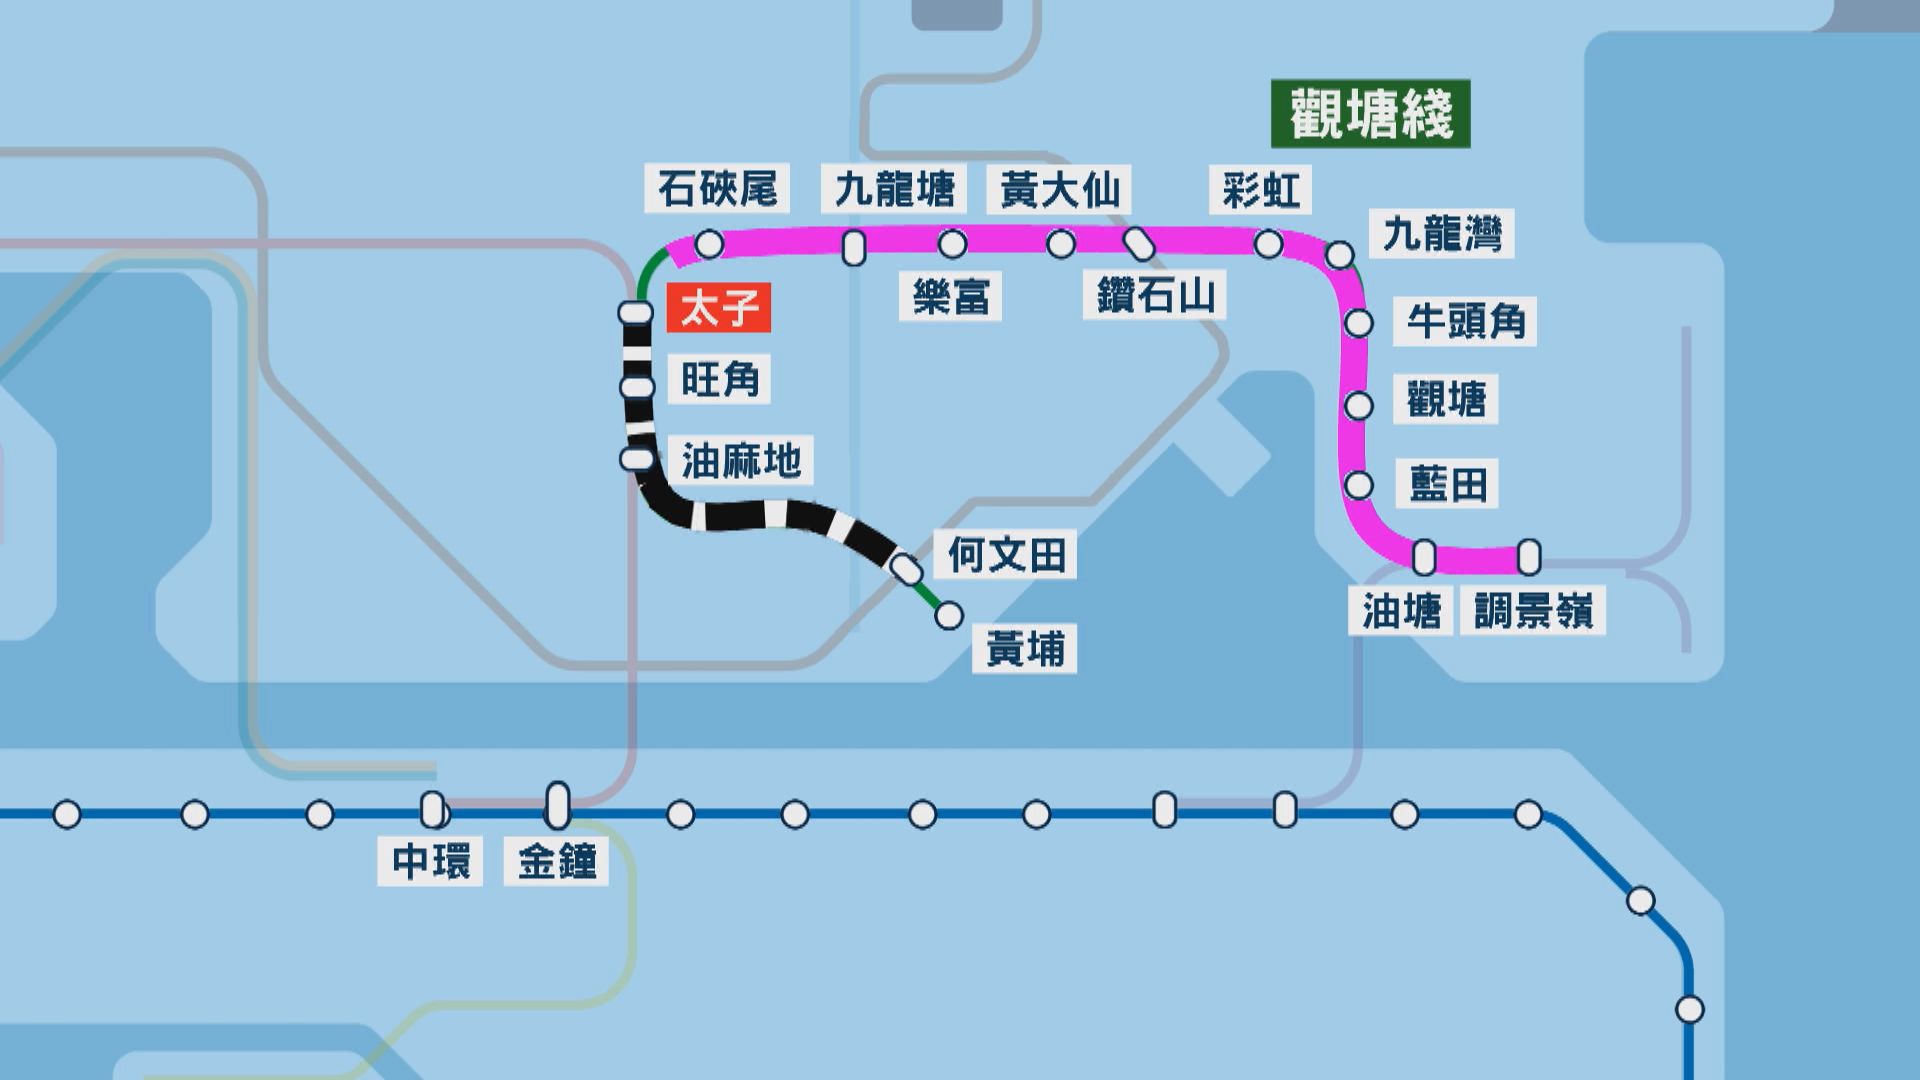 觀塘綫太子至何文田7.28列車停運一日 港鐵提供8或30X替代路線